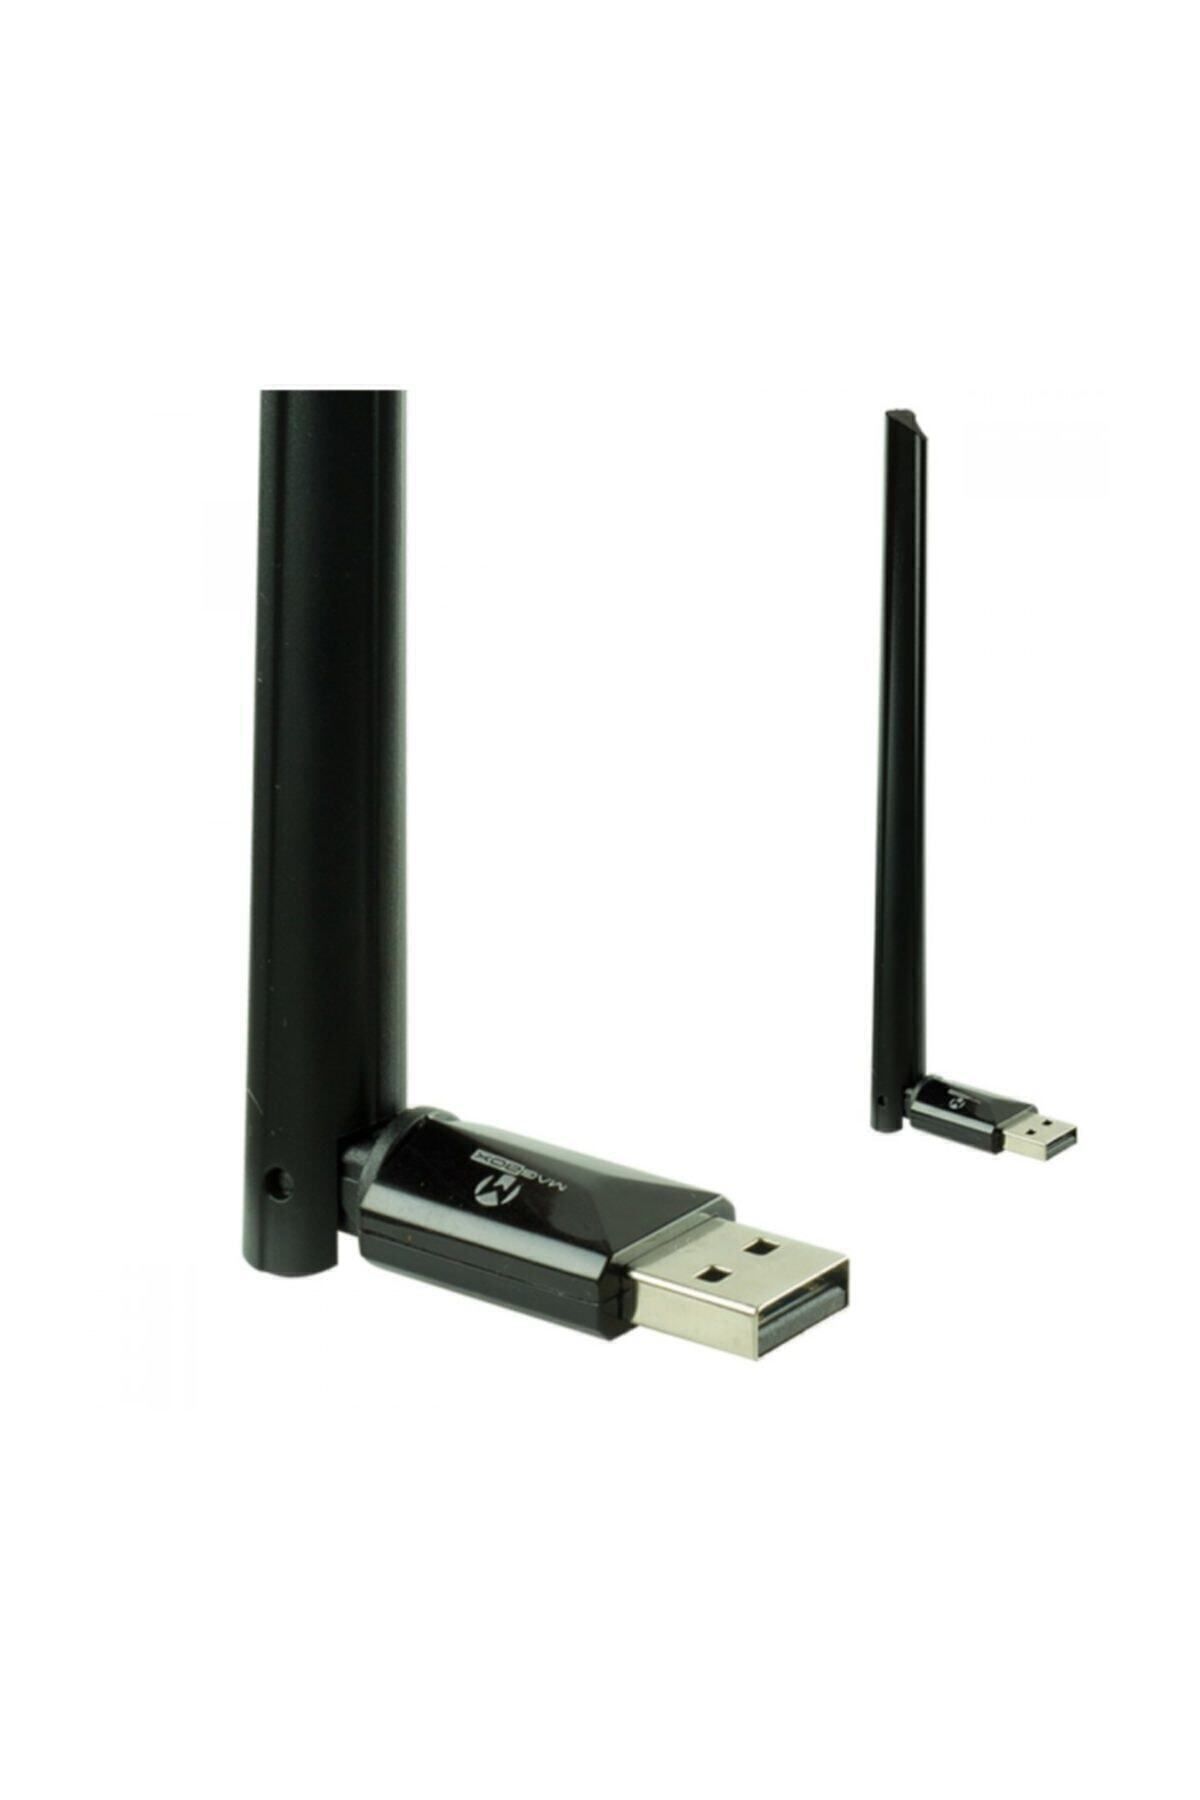 MAGBOX Usb Stick 802.11n 7601 Işlemcili 150 Mbps Usb Wireless Adaptör